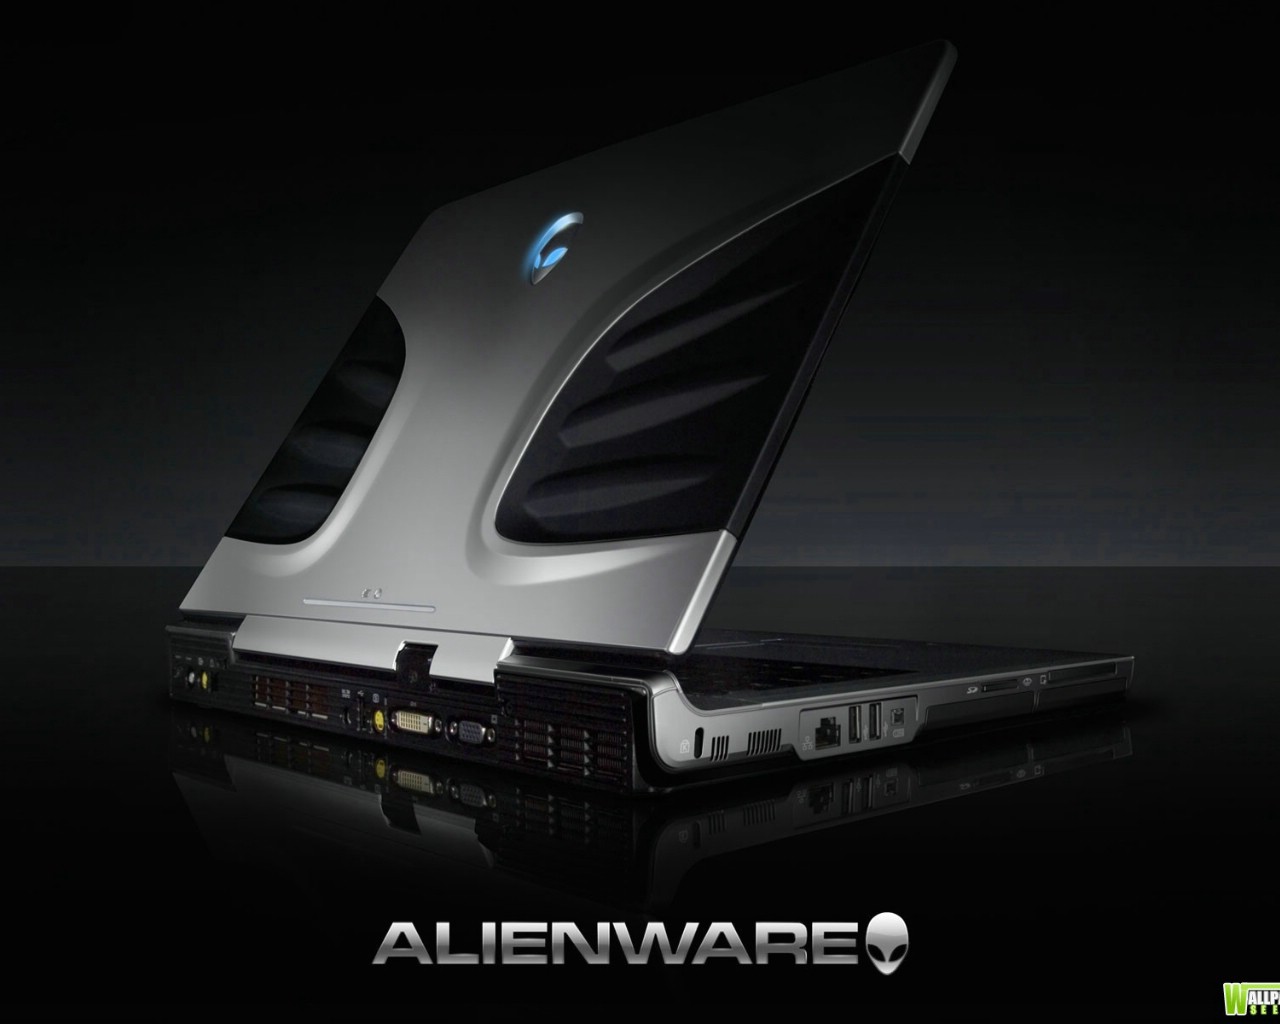 壁纸1280x1024Alienware 戴尔 壁纸27壁纸 Alienware（戴尔）壁纸 Alienware（戴尔）图片 Alienware（戴尔）素材 系统壁纸 系统图库 系统图片素材桌面壁纸